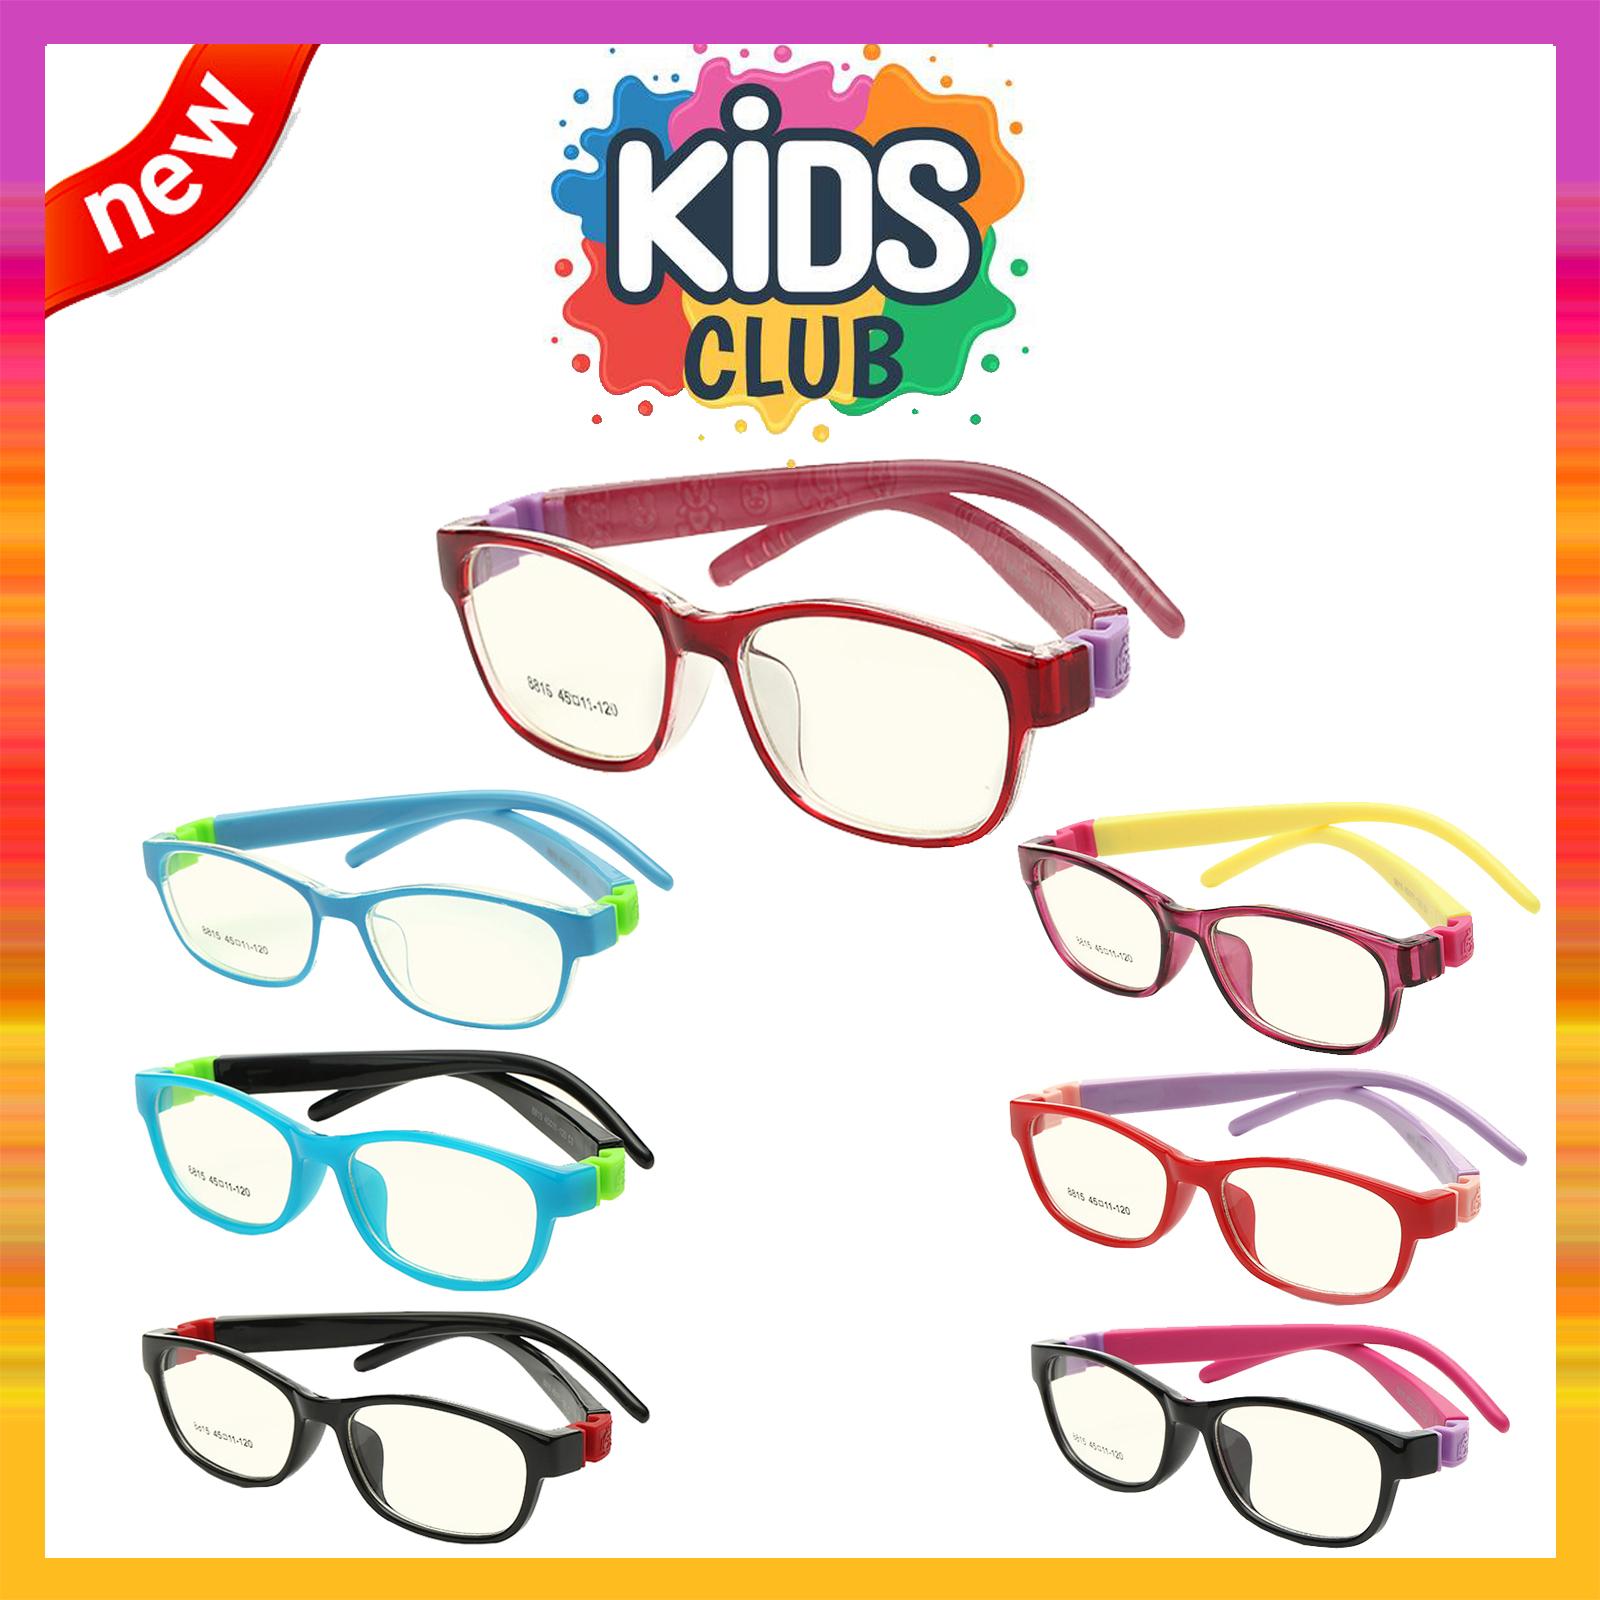 แว่นตาเกาหลีเด็ก Fashion Korea Children แว่นตาเด็ก รุ่น 8815 กรอบแว่นตาเด็ก Rectangle ทรงสี่เหลี่ยมผืนผ้า Eyeglass baby frame ( สำหรับตัดเลนส์ ) วัสดุ PC เบา ขาข้อต่อ Kid leg joints Plastic Grade A material Eyewear Top Glasses